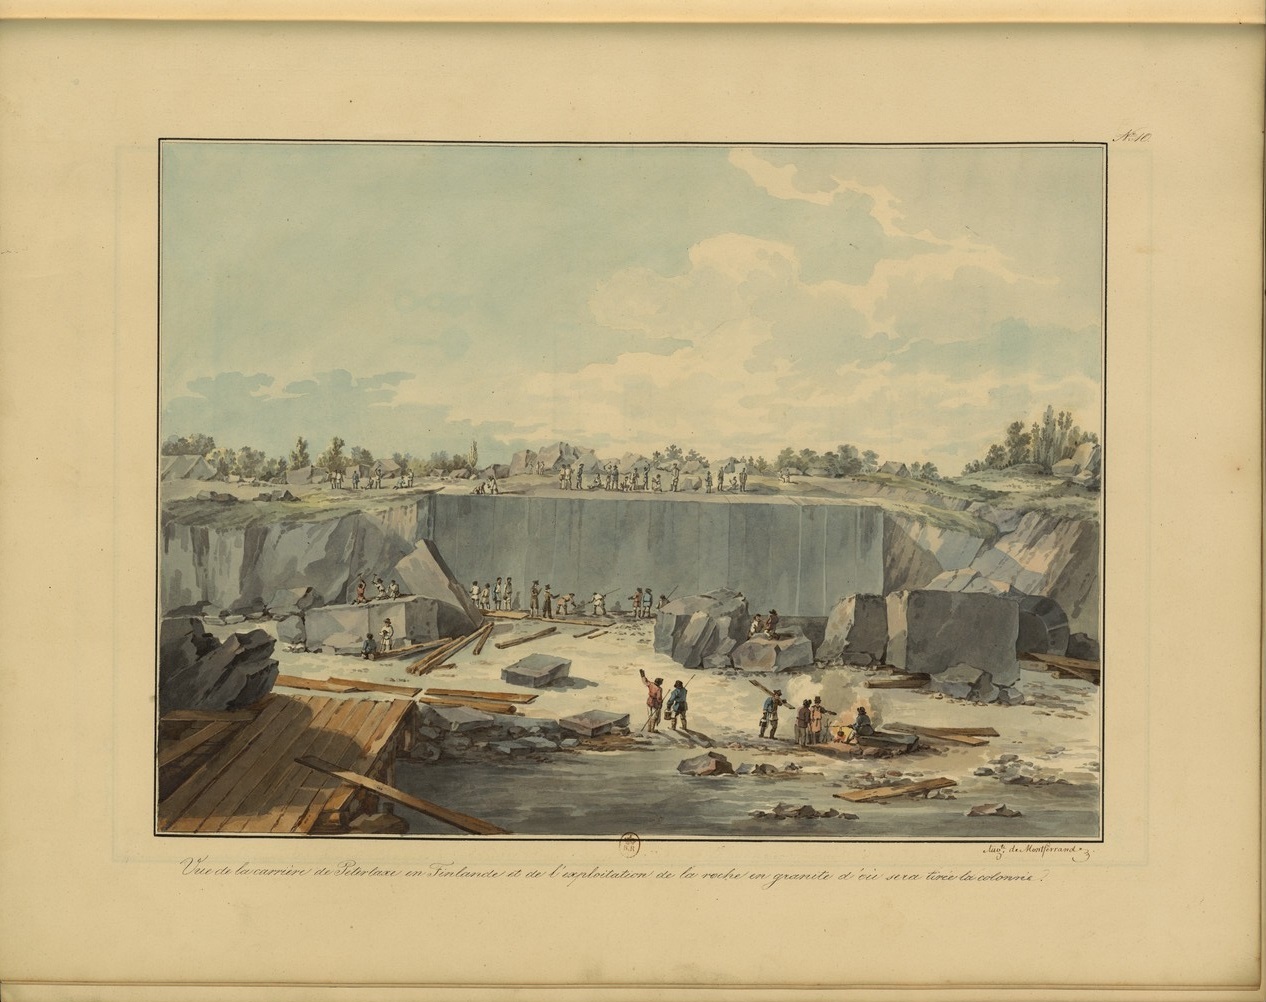  Сказки Александрийского столпа. Вырубание 1600-тонного монолита из гранита 